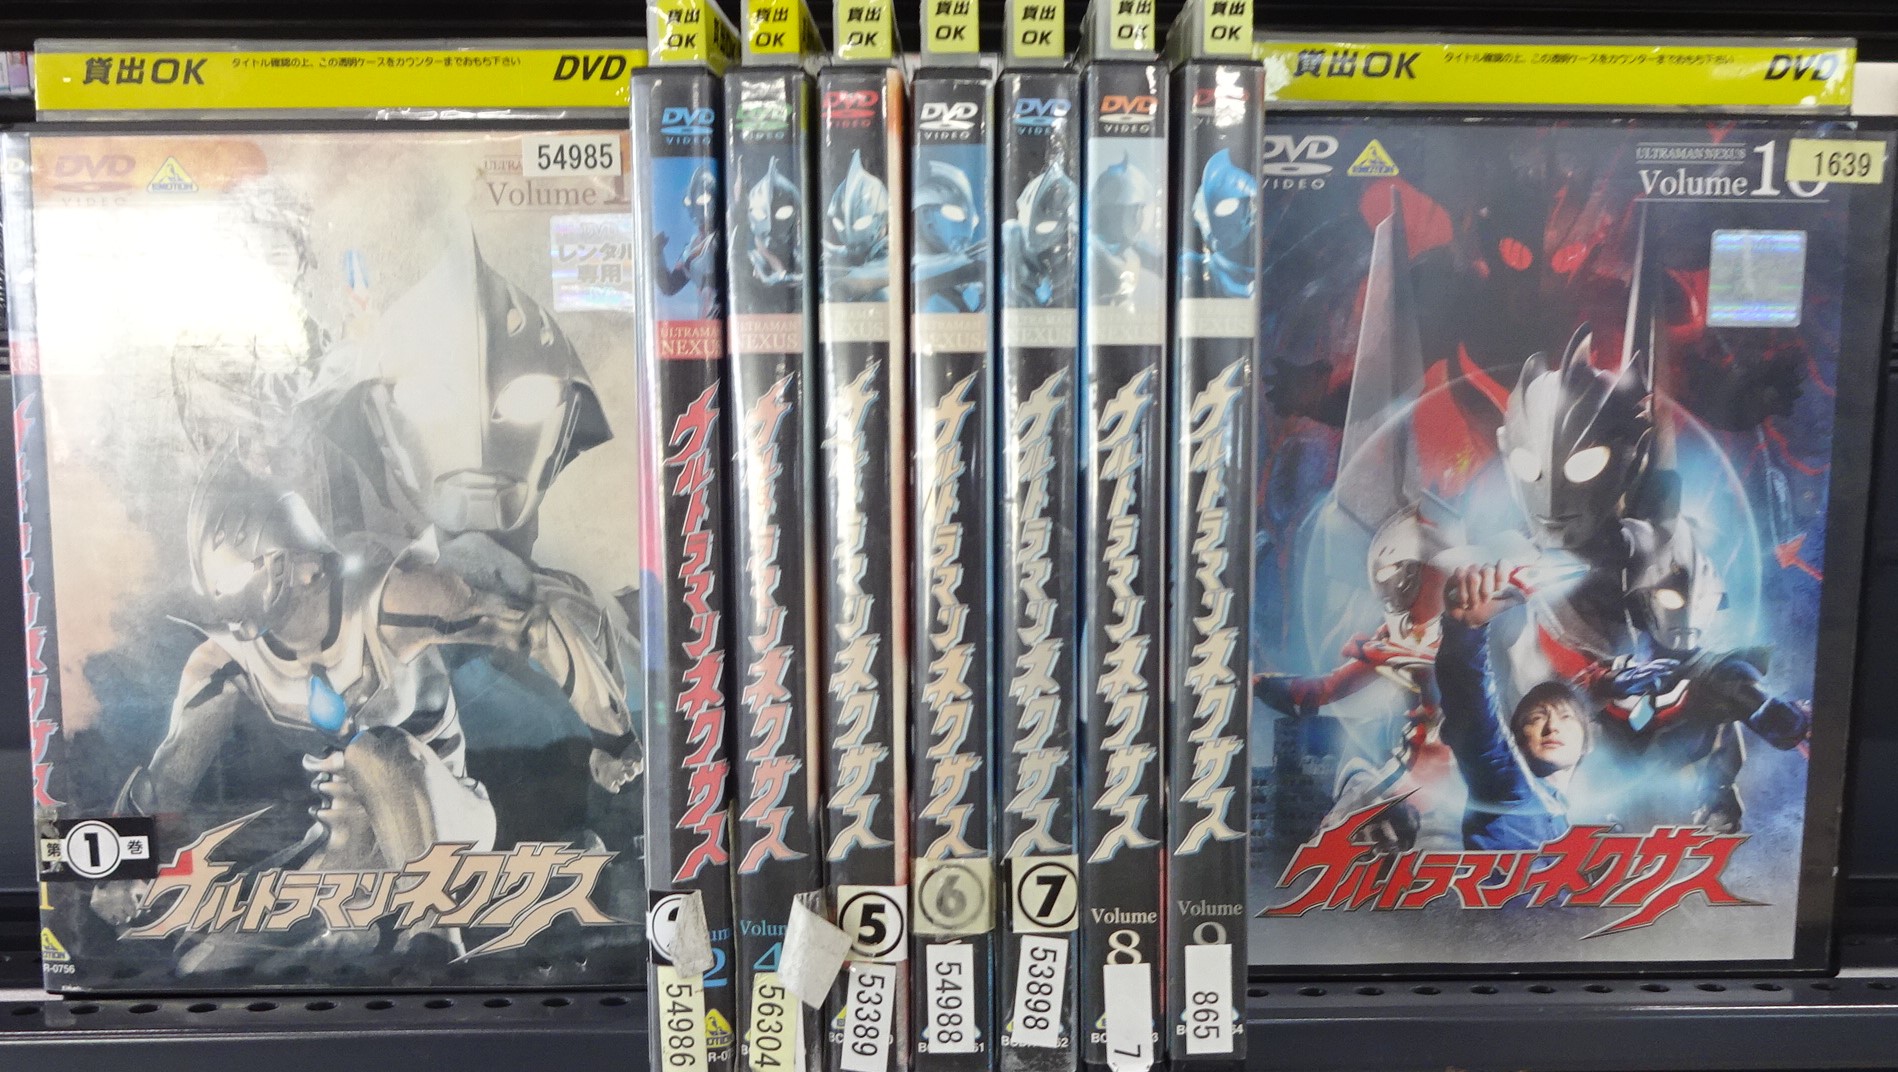 ウルトラマンネクサス DVD 1-10巻 全9巻セット 8巻抜け - ブルーレイ